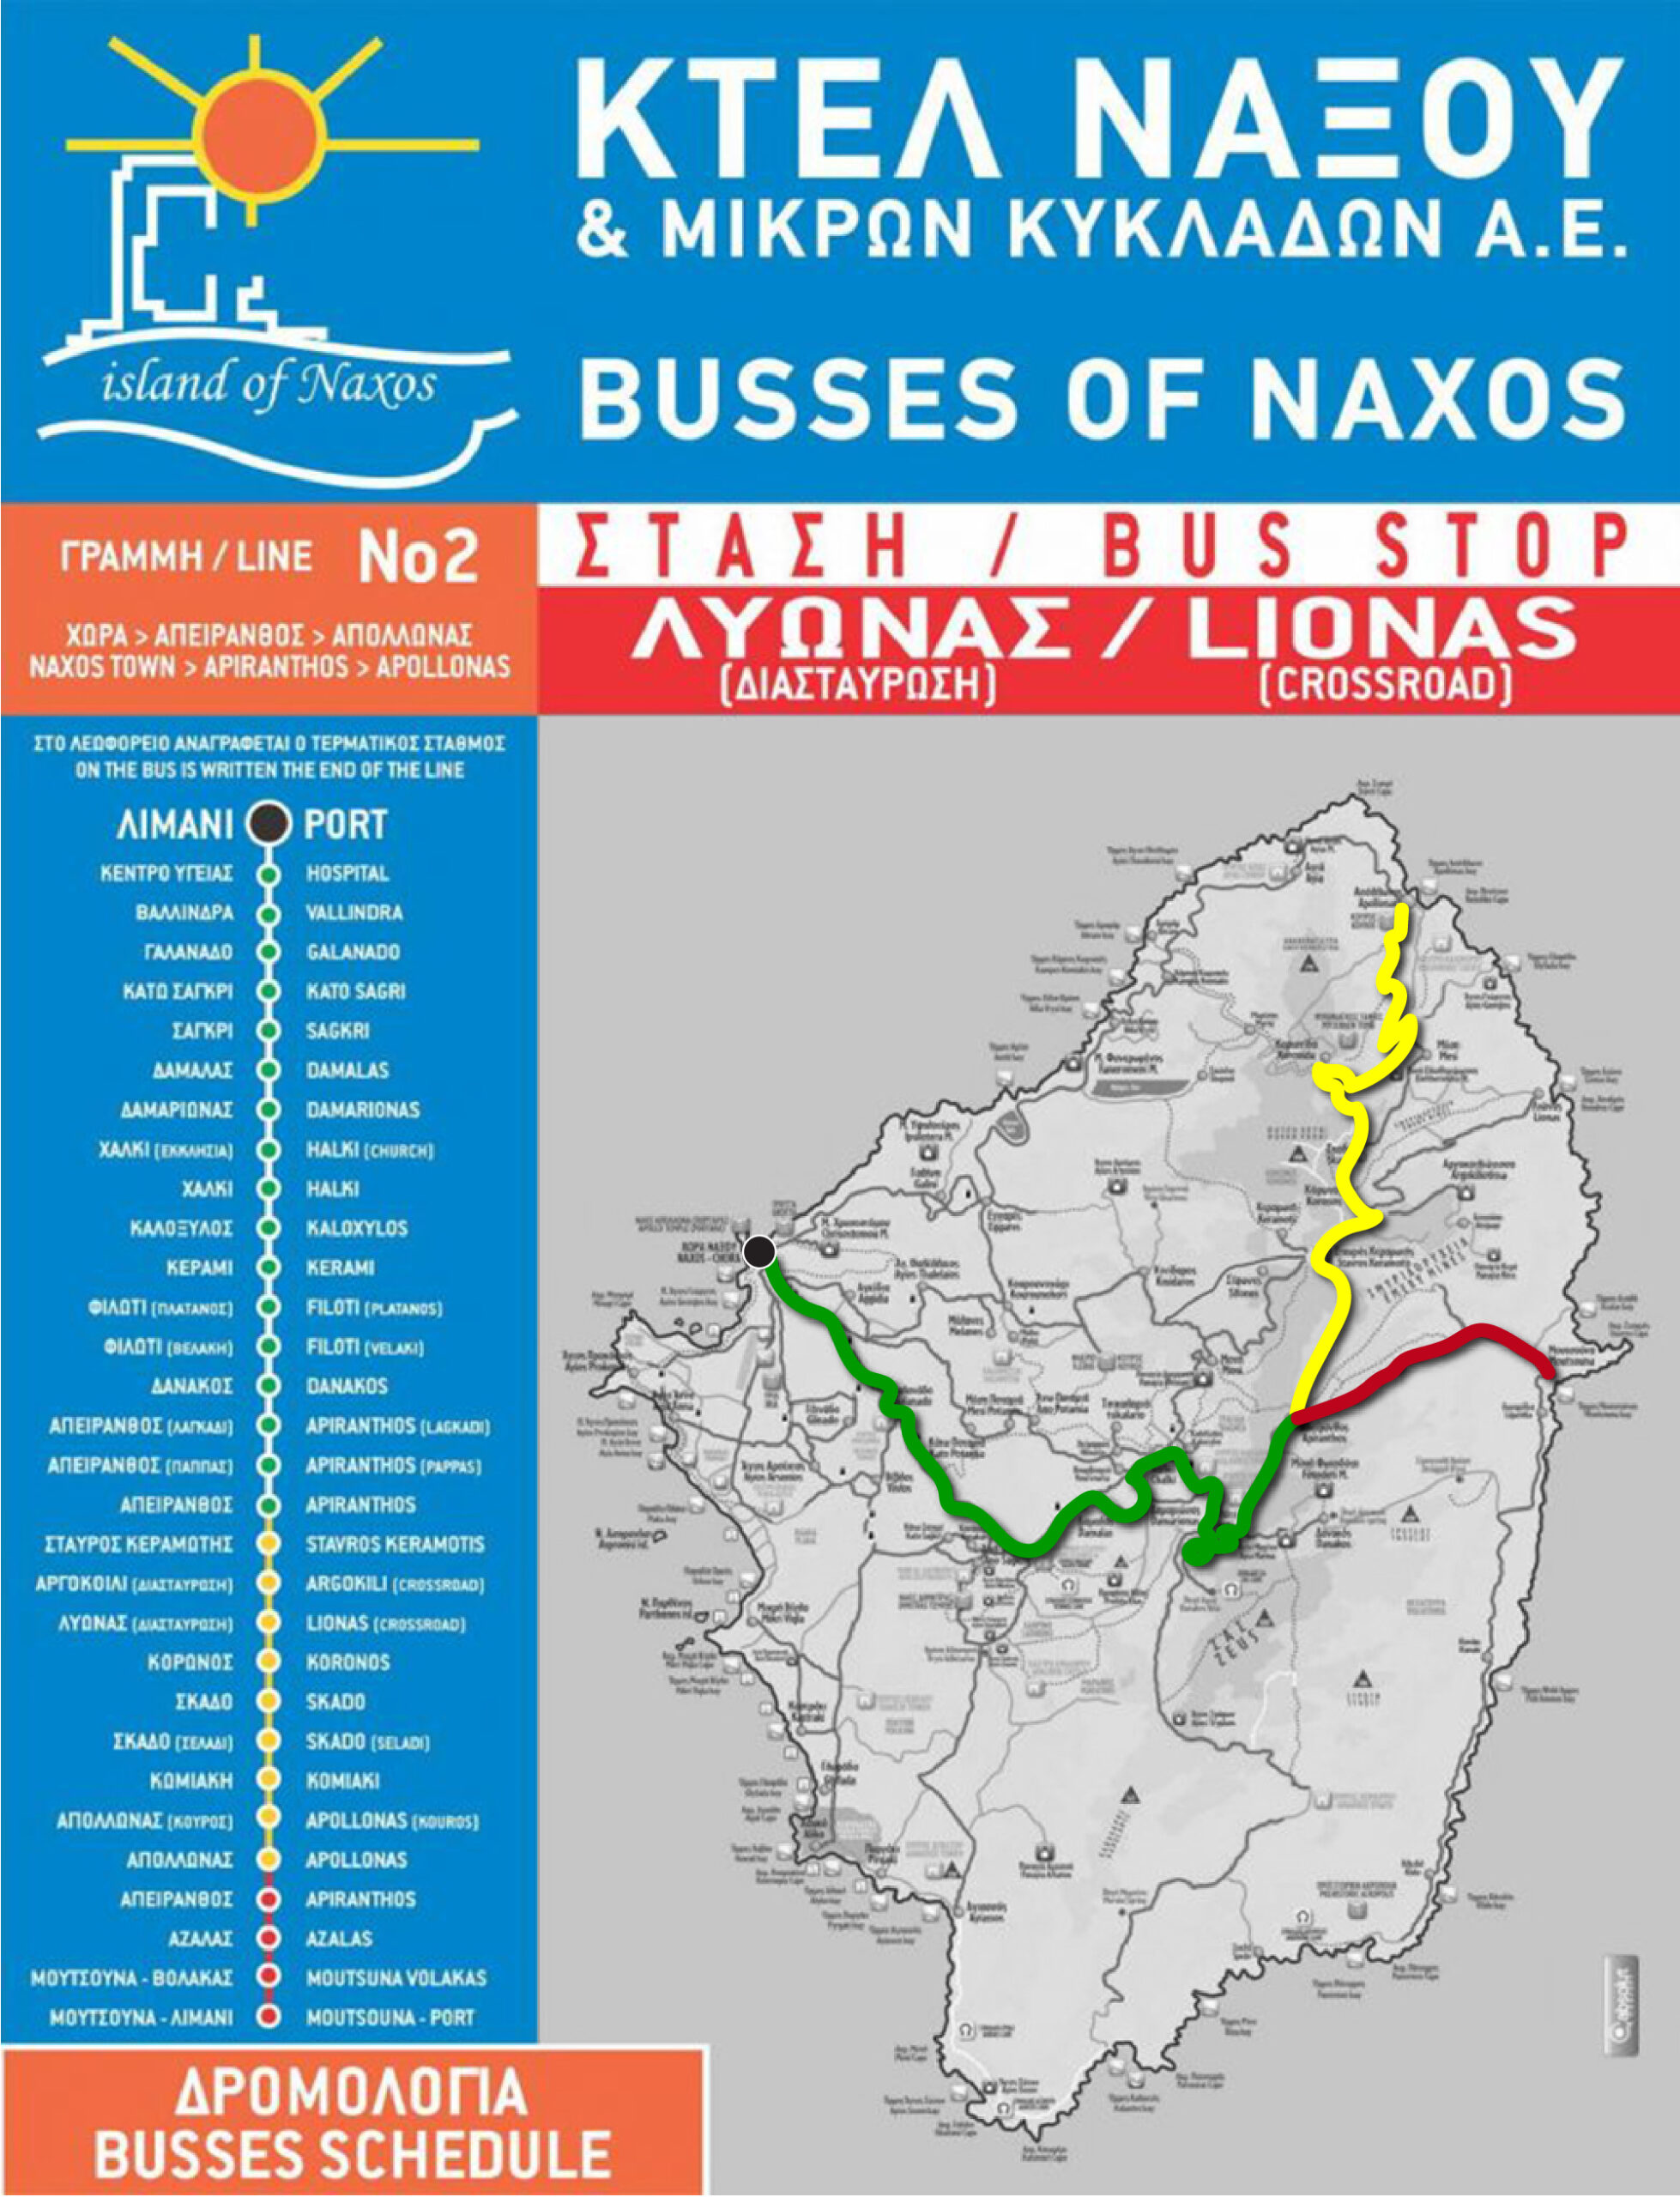 Naxos bus route #2.